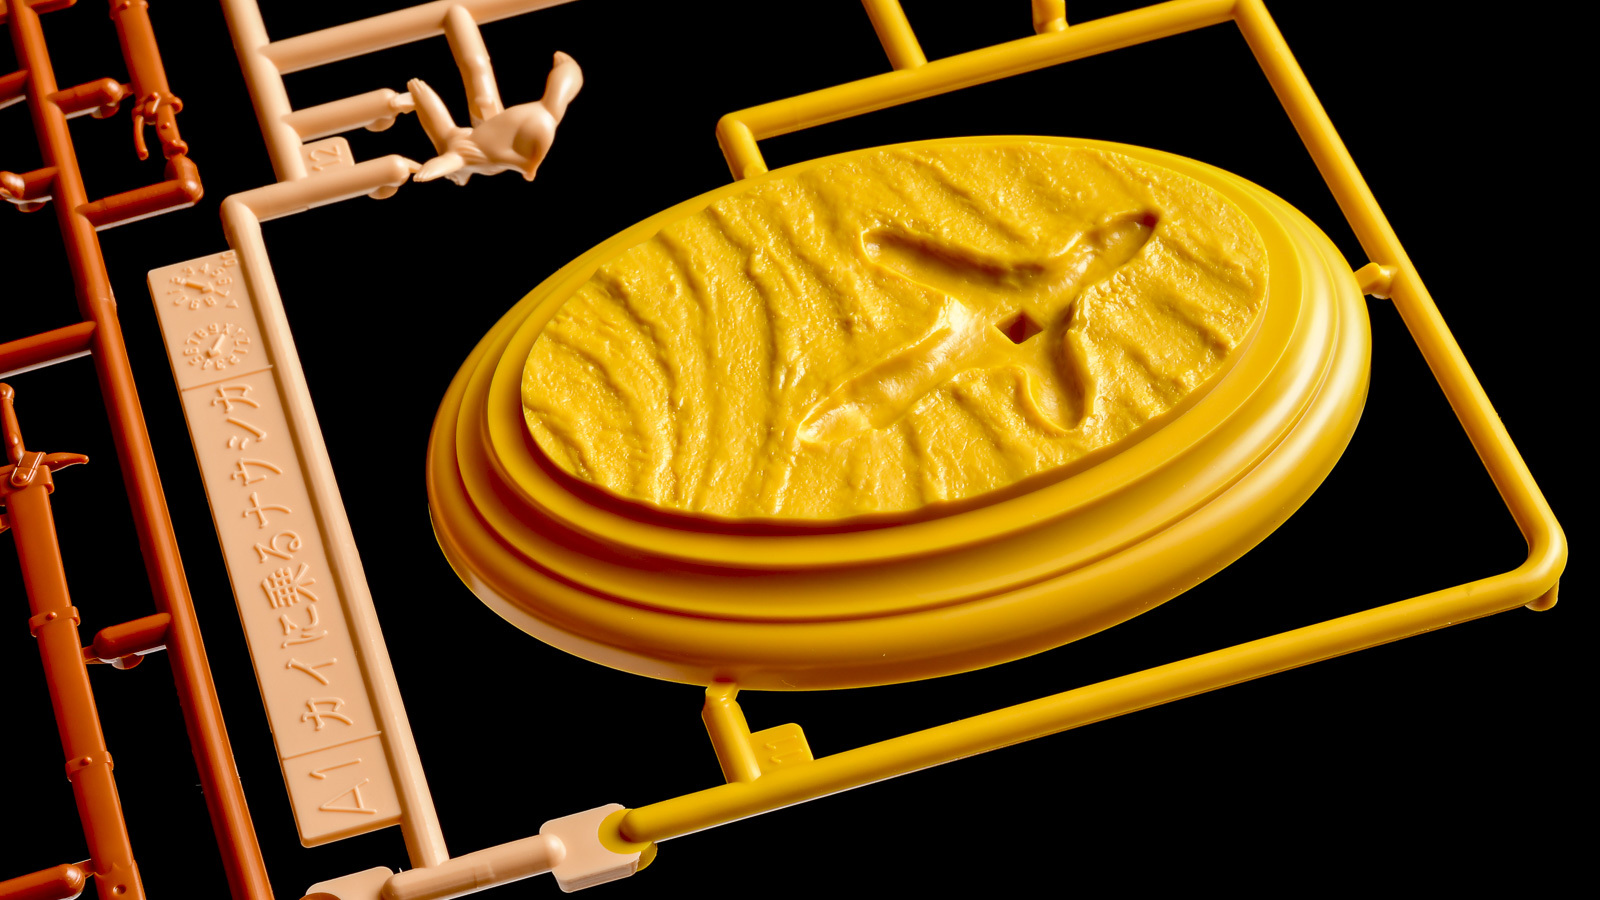 バンダイ製ナウシカのプラモに見る、世にも珍しい「金型魔改造」の世界_b0029315_00071078.jpg